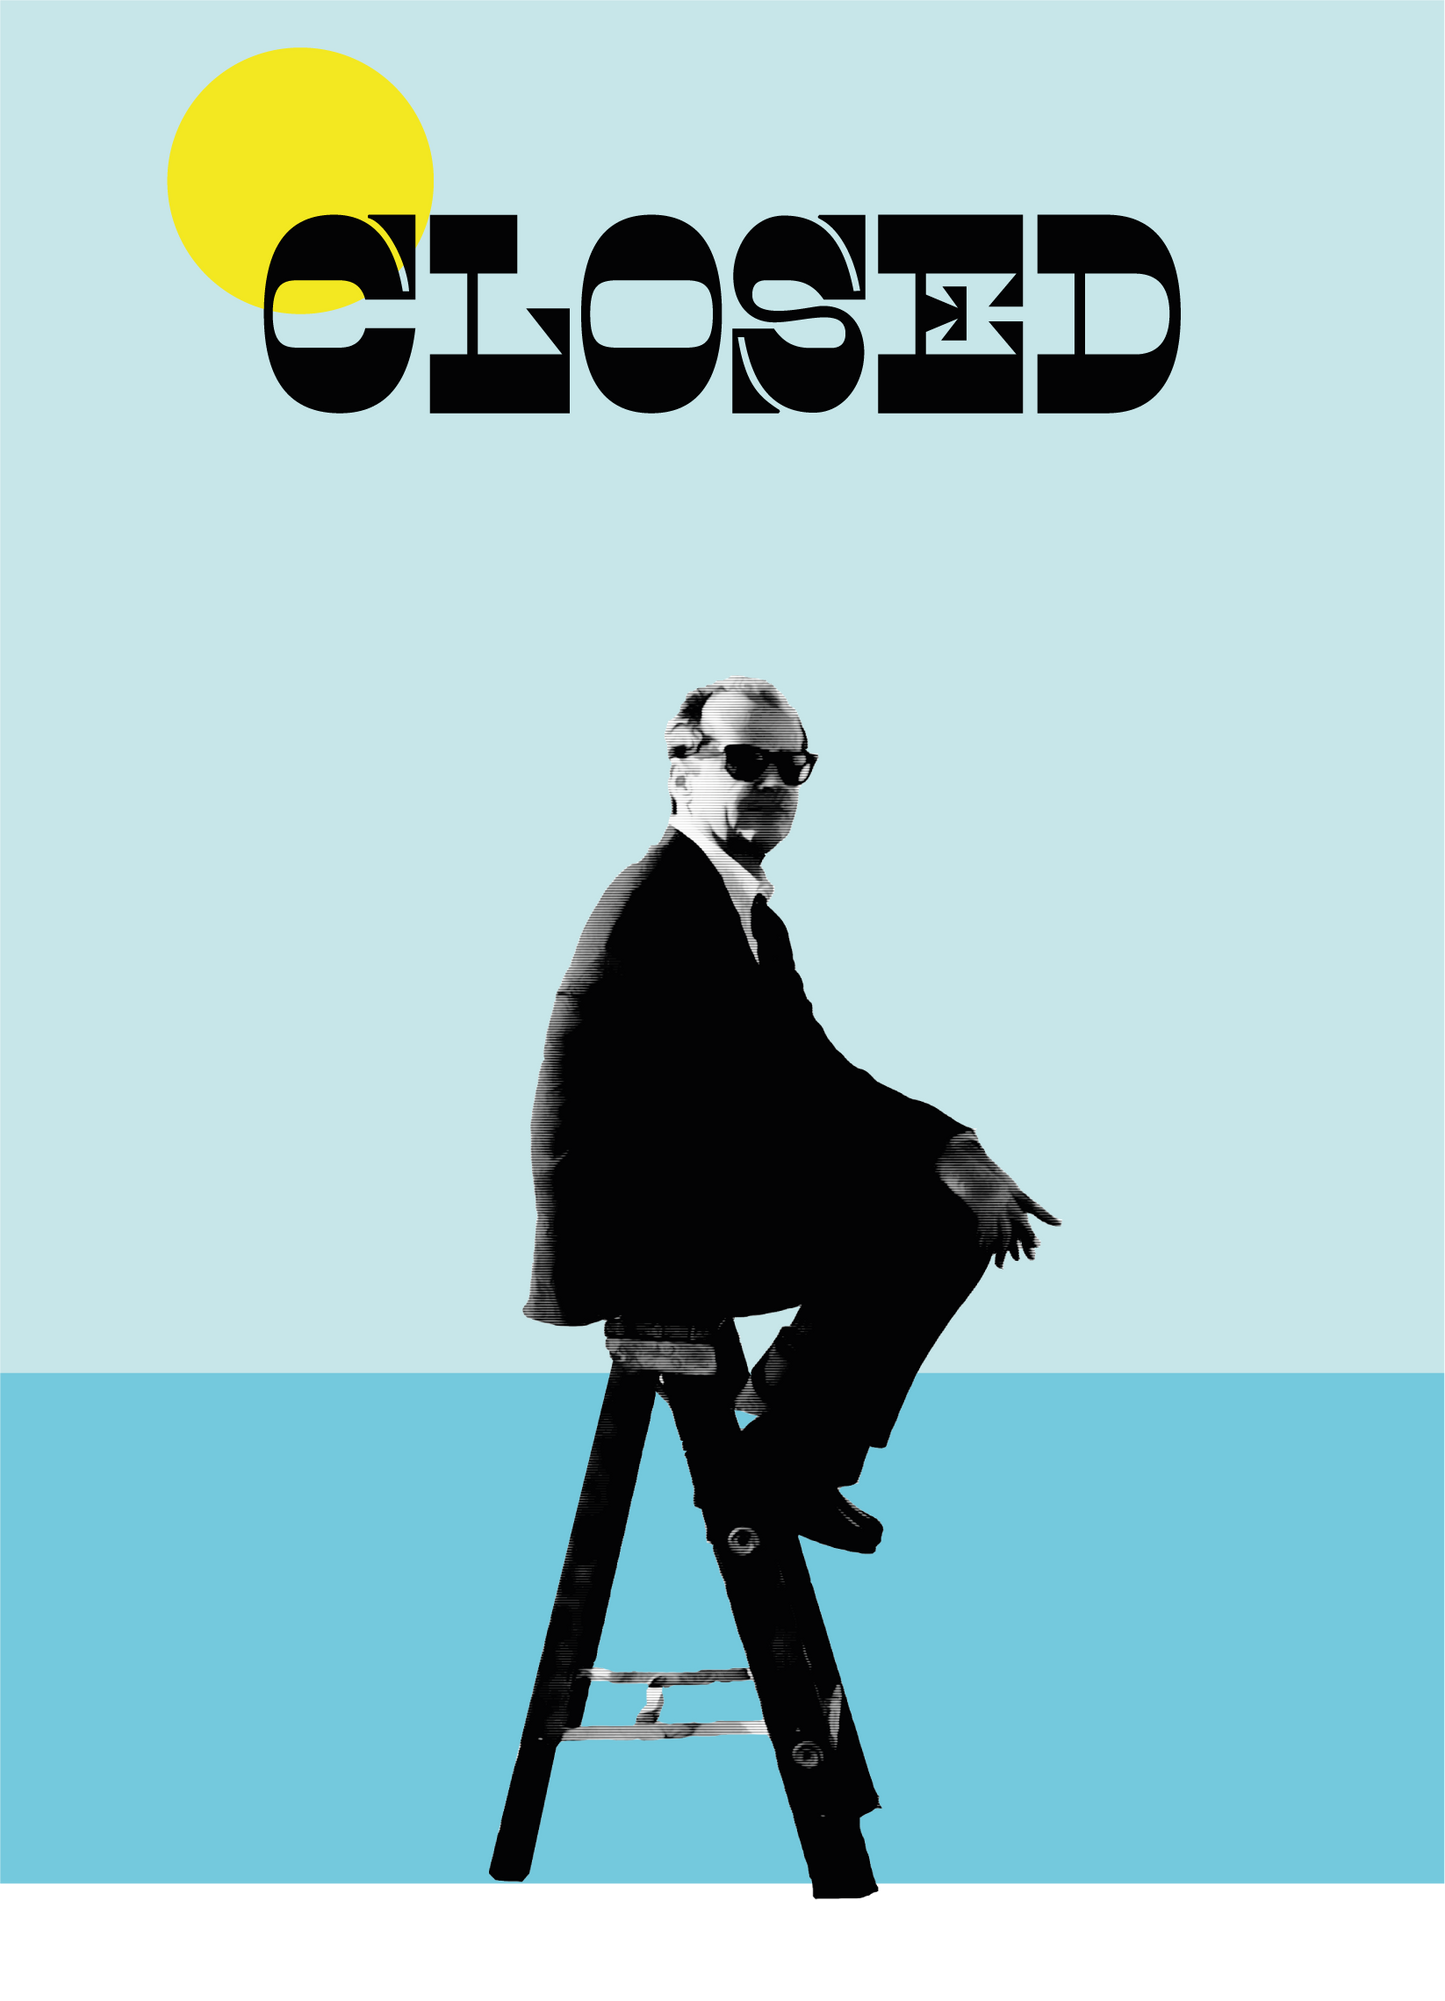 Closed